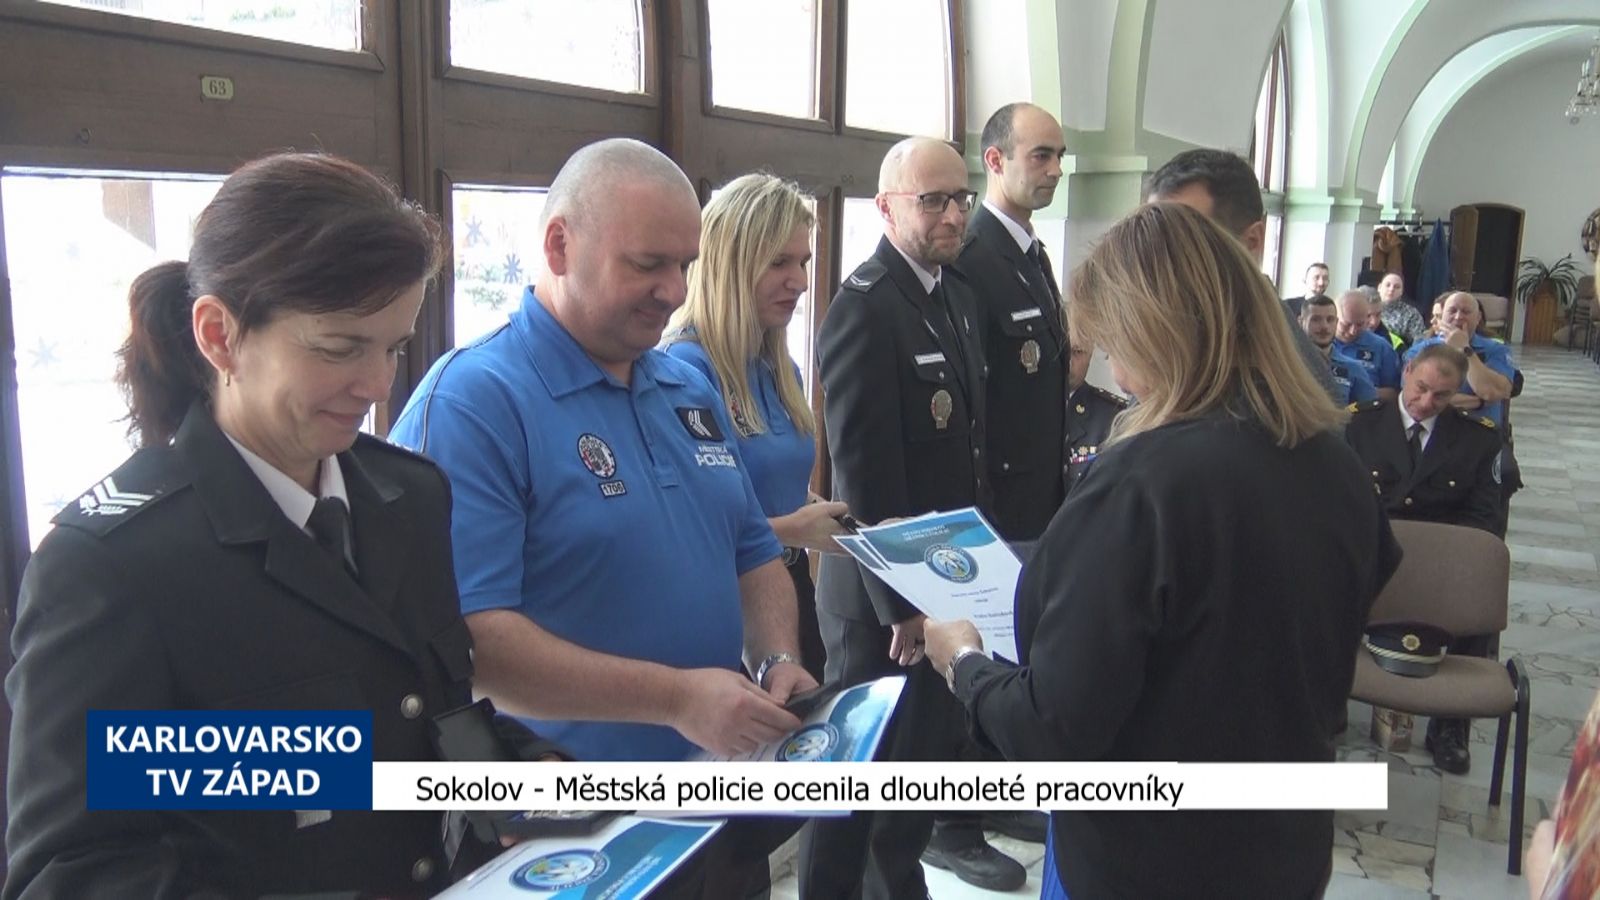 Sokolov: Městská policie ocenila dlouholeté pracovníky (TV Západ)